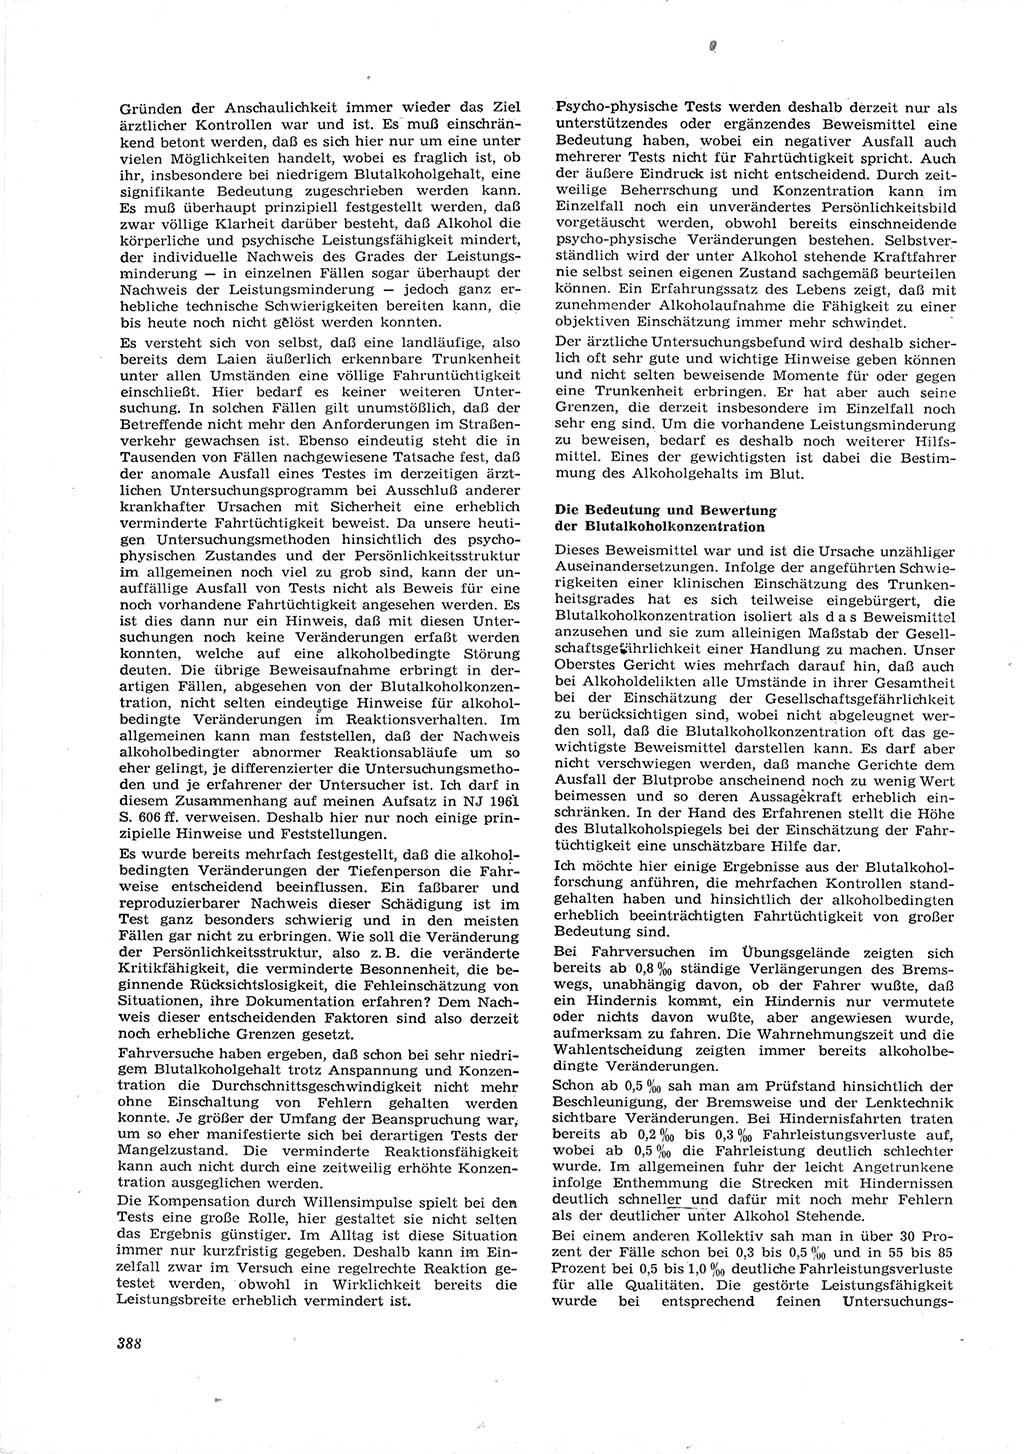 Neue Justiz (NJ), Zeitschrift für Recht und Rechtswissenschaft [Deutsche Demokratische Republik (DDR)], 16. Jahrgang 1962, Seite 388 (NJ DDR 1962, S. 388)